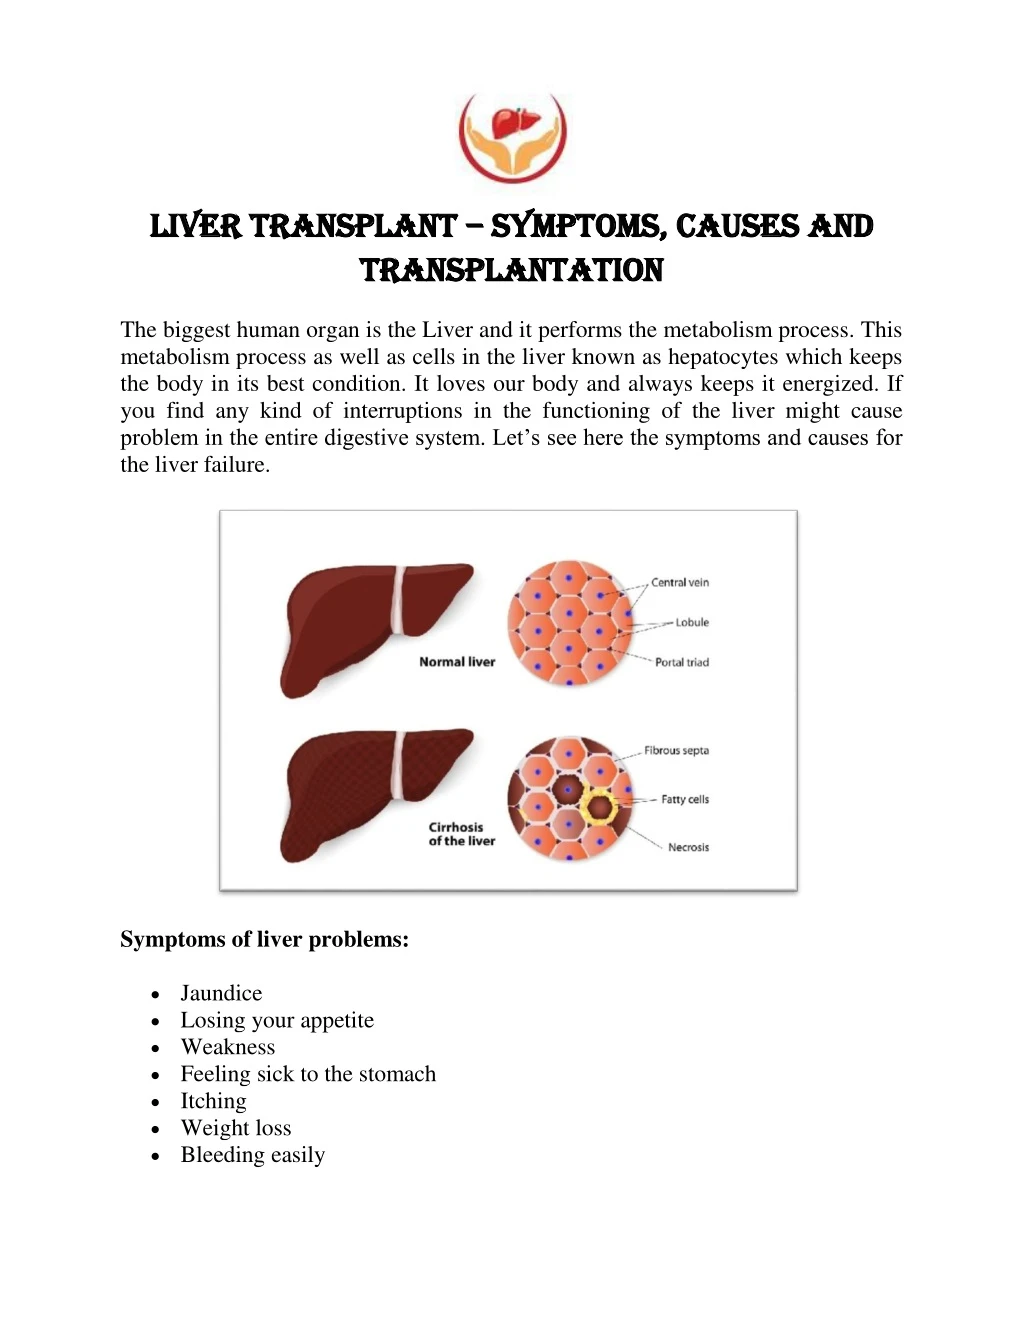 liver transplant liver transplant symptoms causes